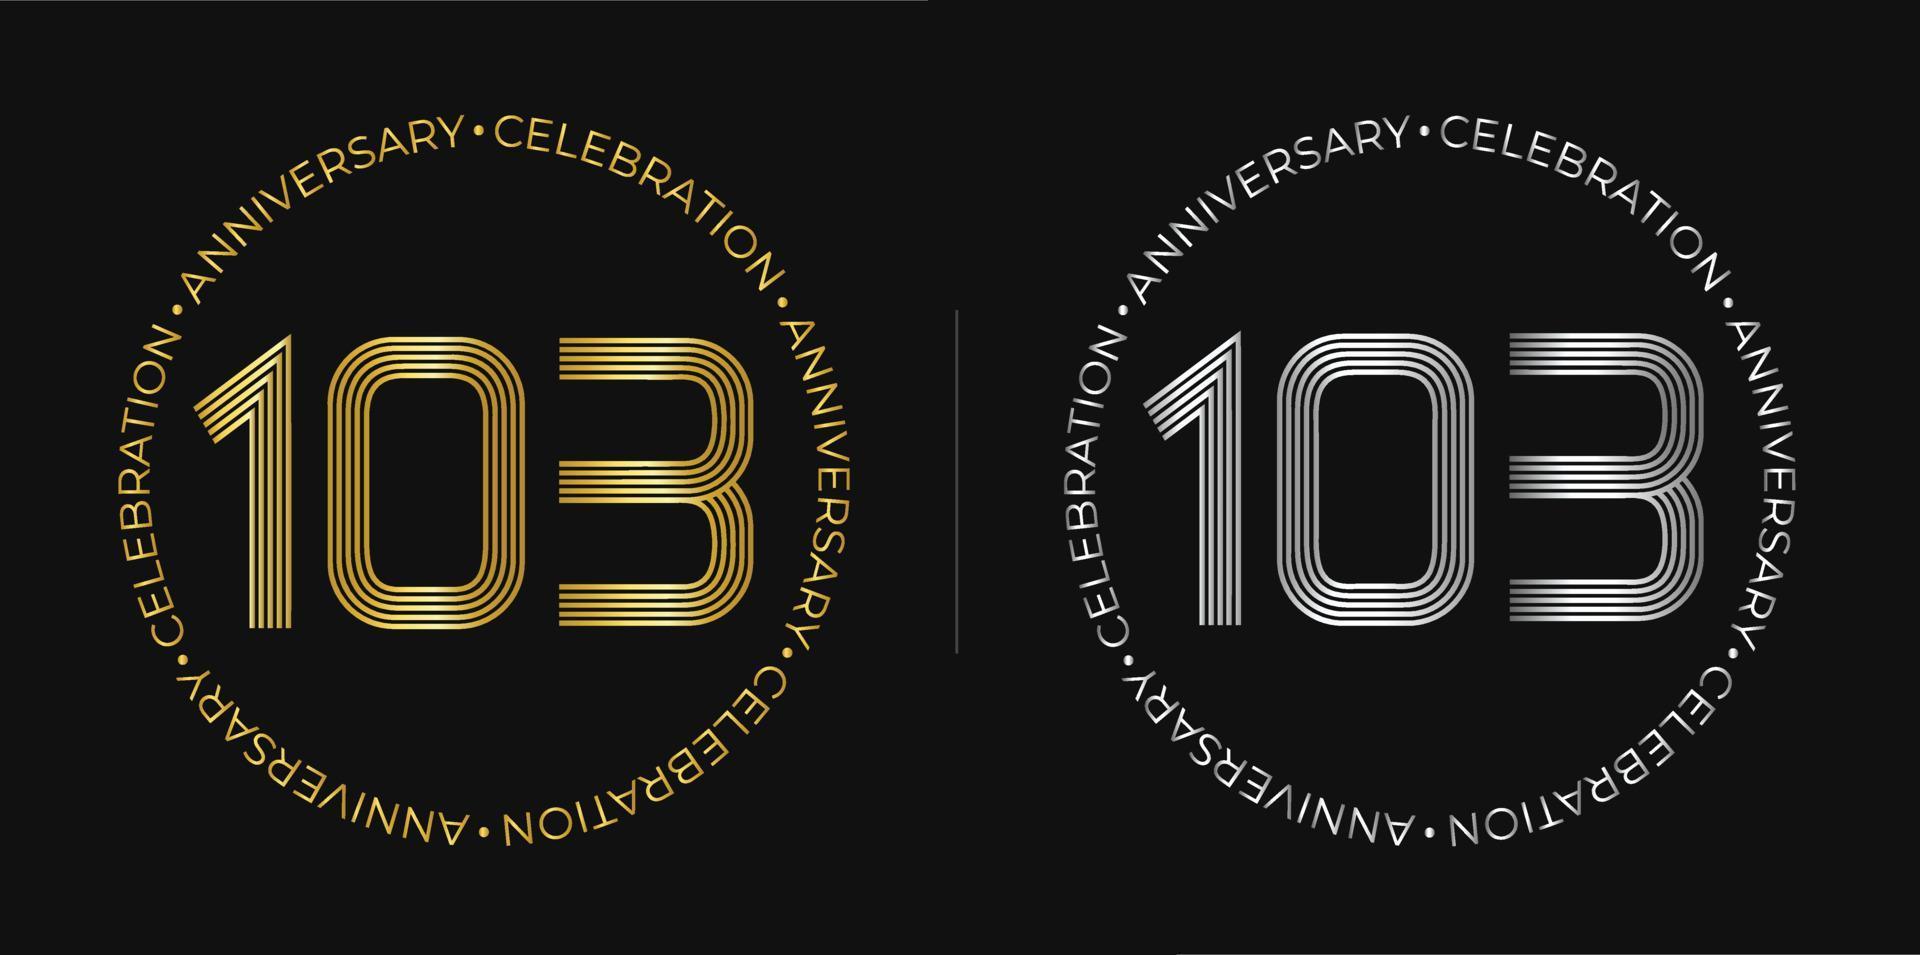 103 cumpleaños. Banner de celebración de aniversario de ciento tres años en colores dorado y plateado. logo circular con diseño de números originales en líneas elegantes. vector